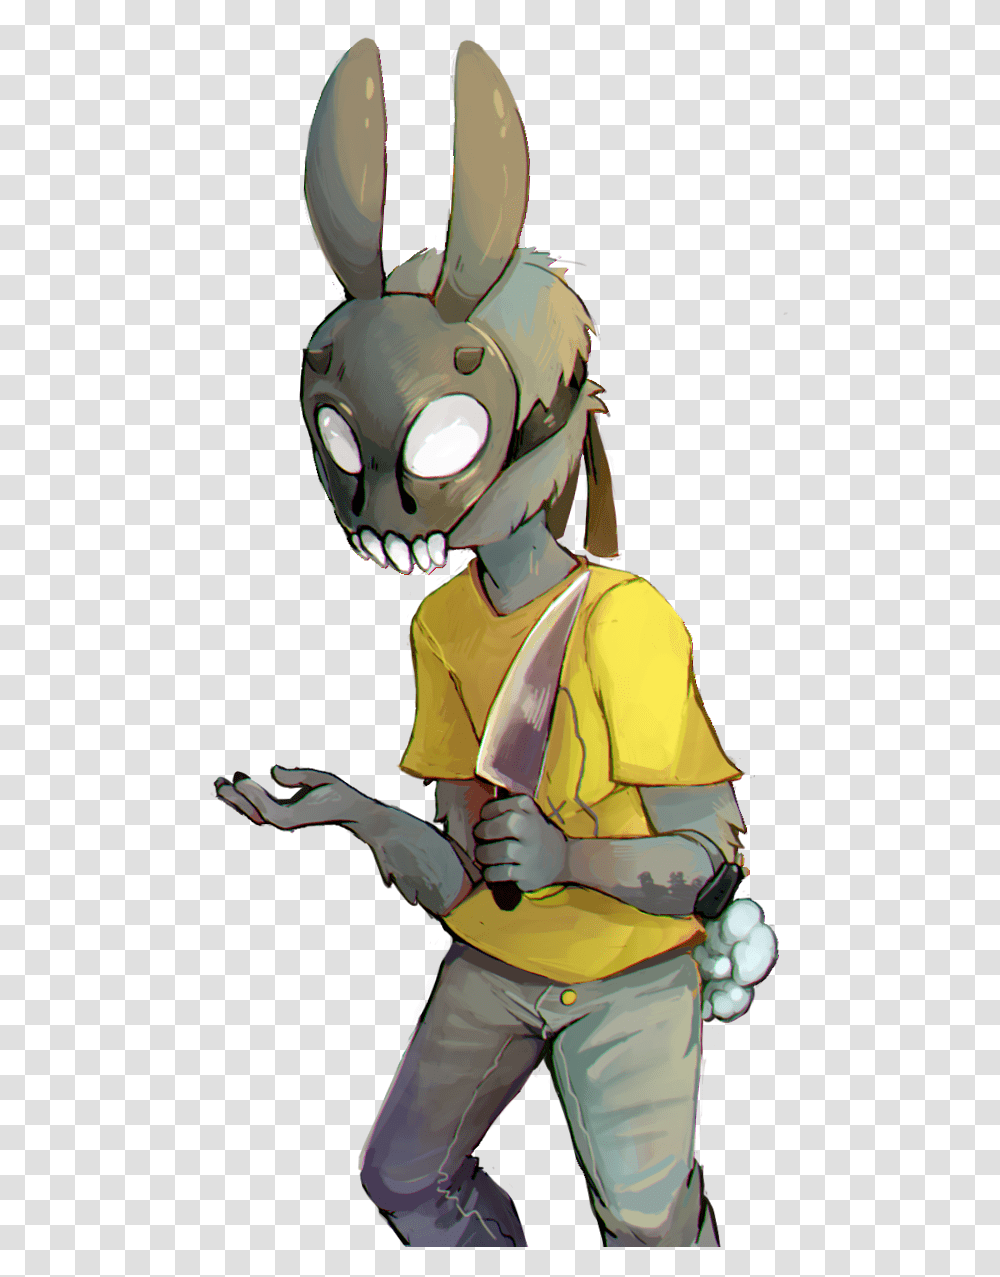 Evil Bunny, Person, Human, Apparel Transparent Png